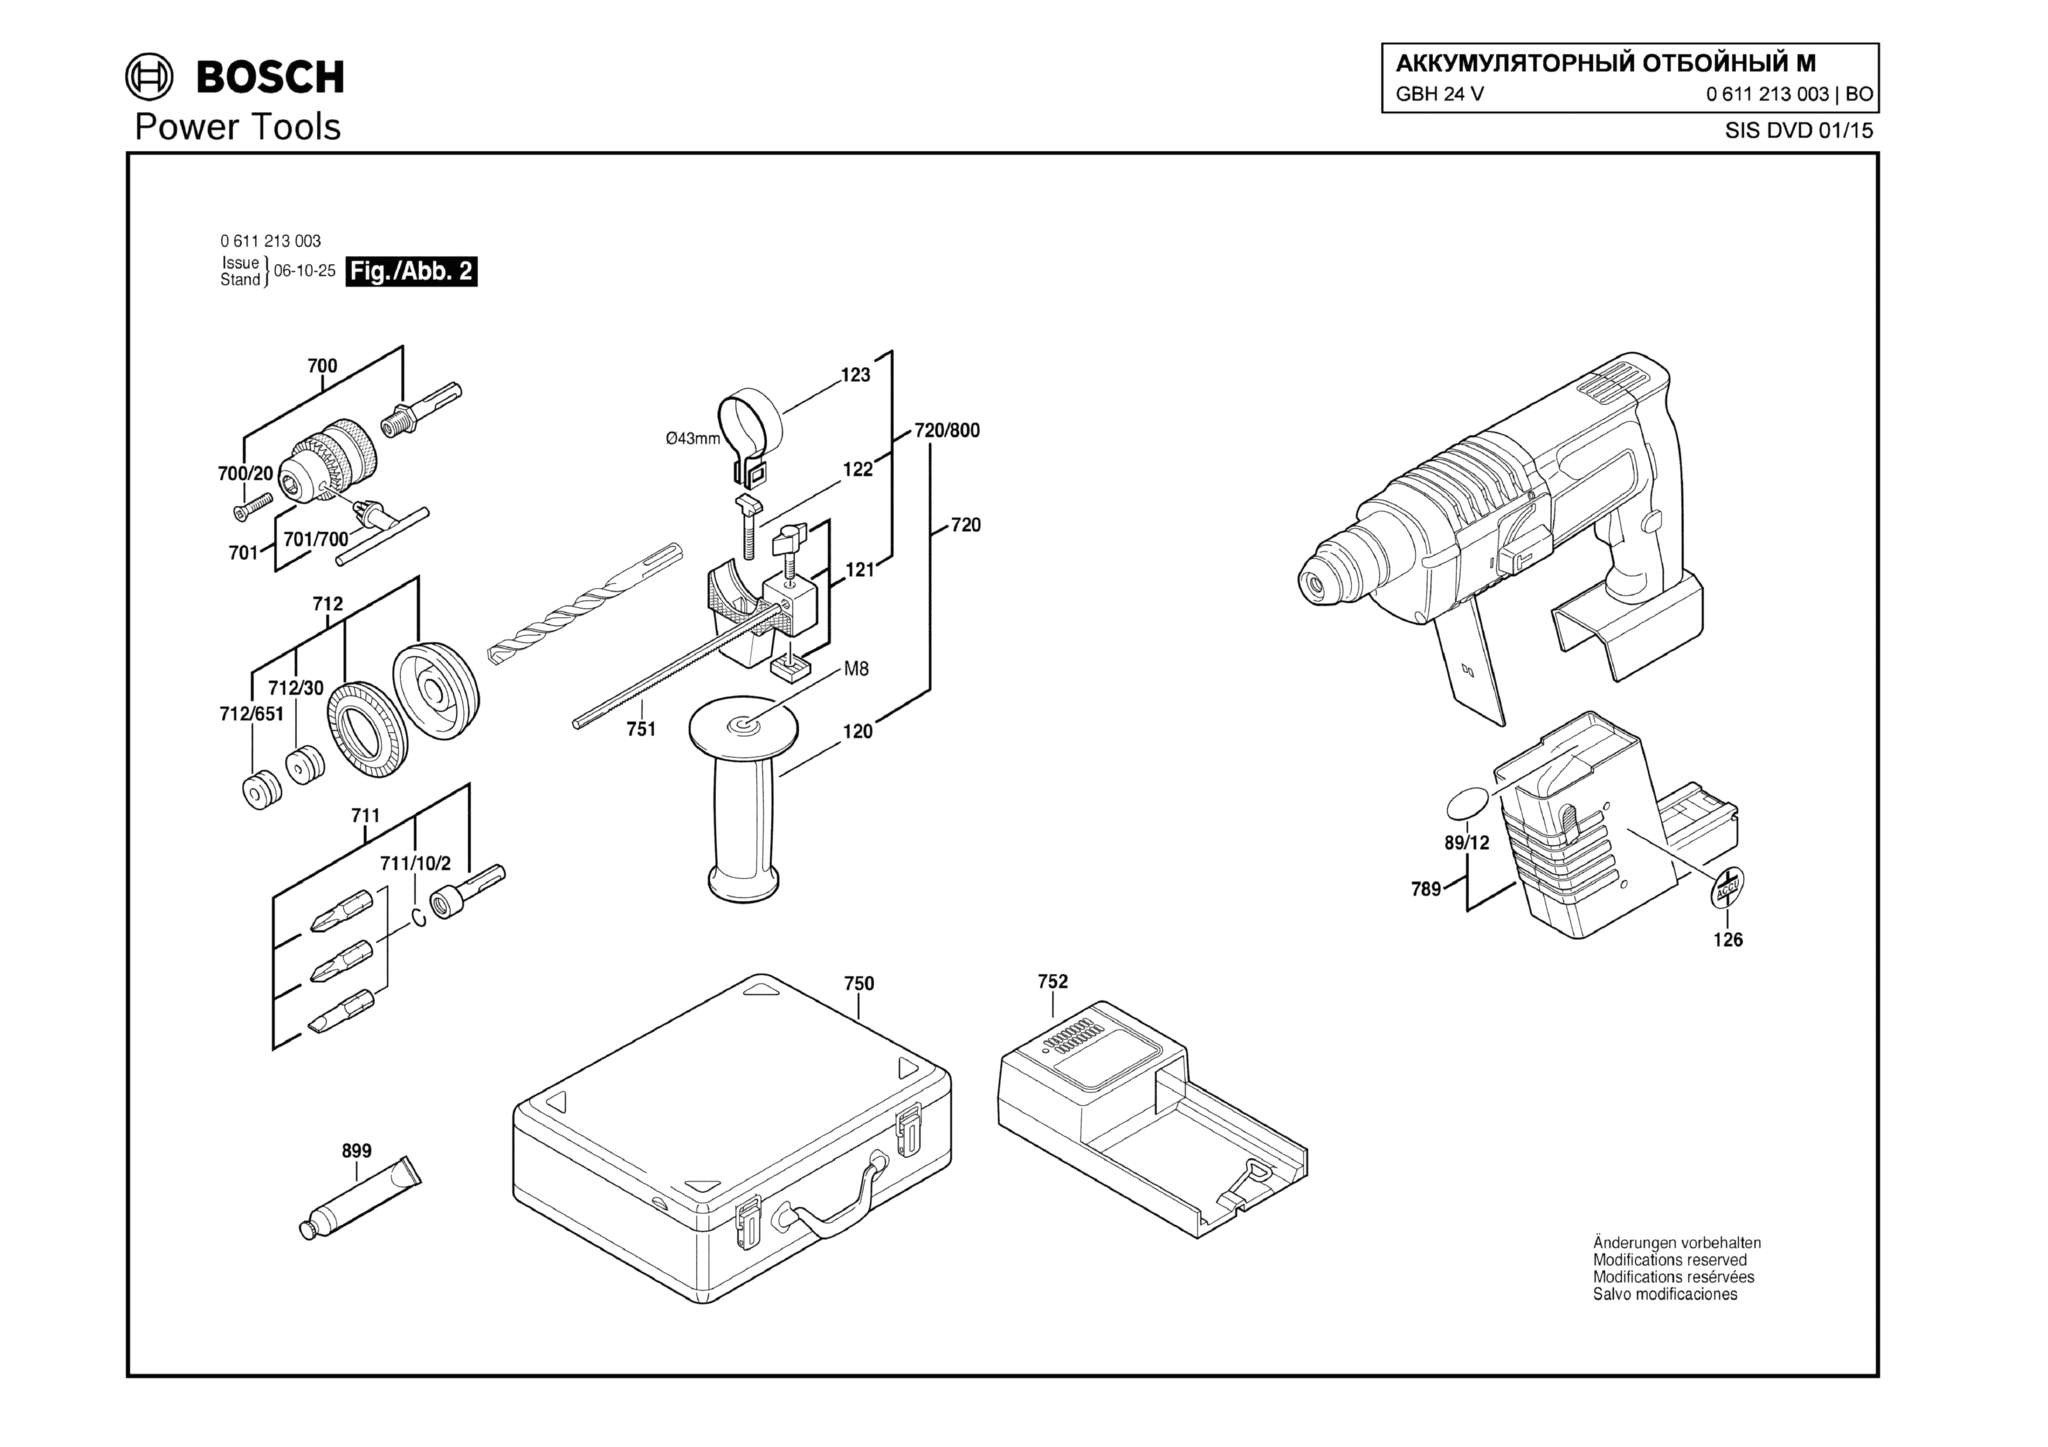 Запчасти, схема и деталировка Bosch GBH 24 V (ТИП 0611213003) (ЧАСТЬ 2)